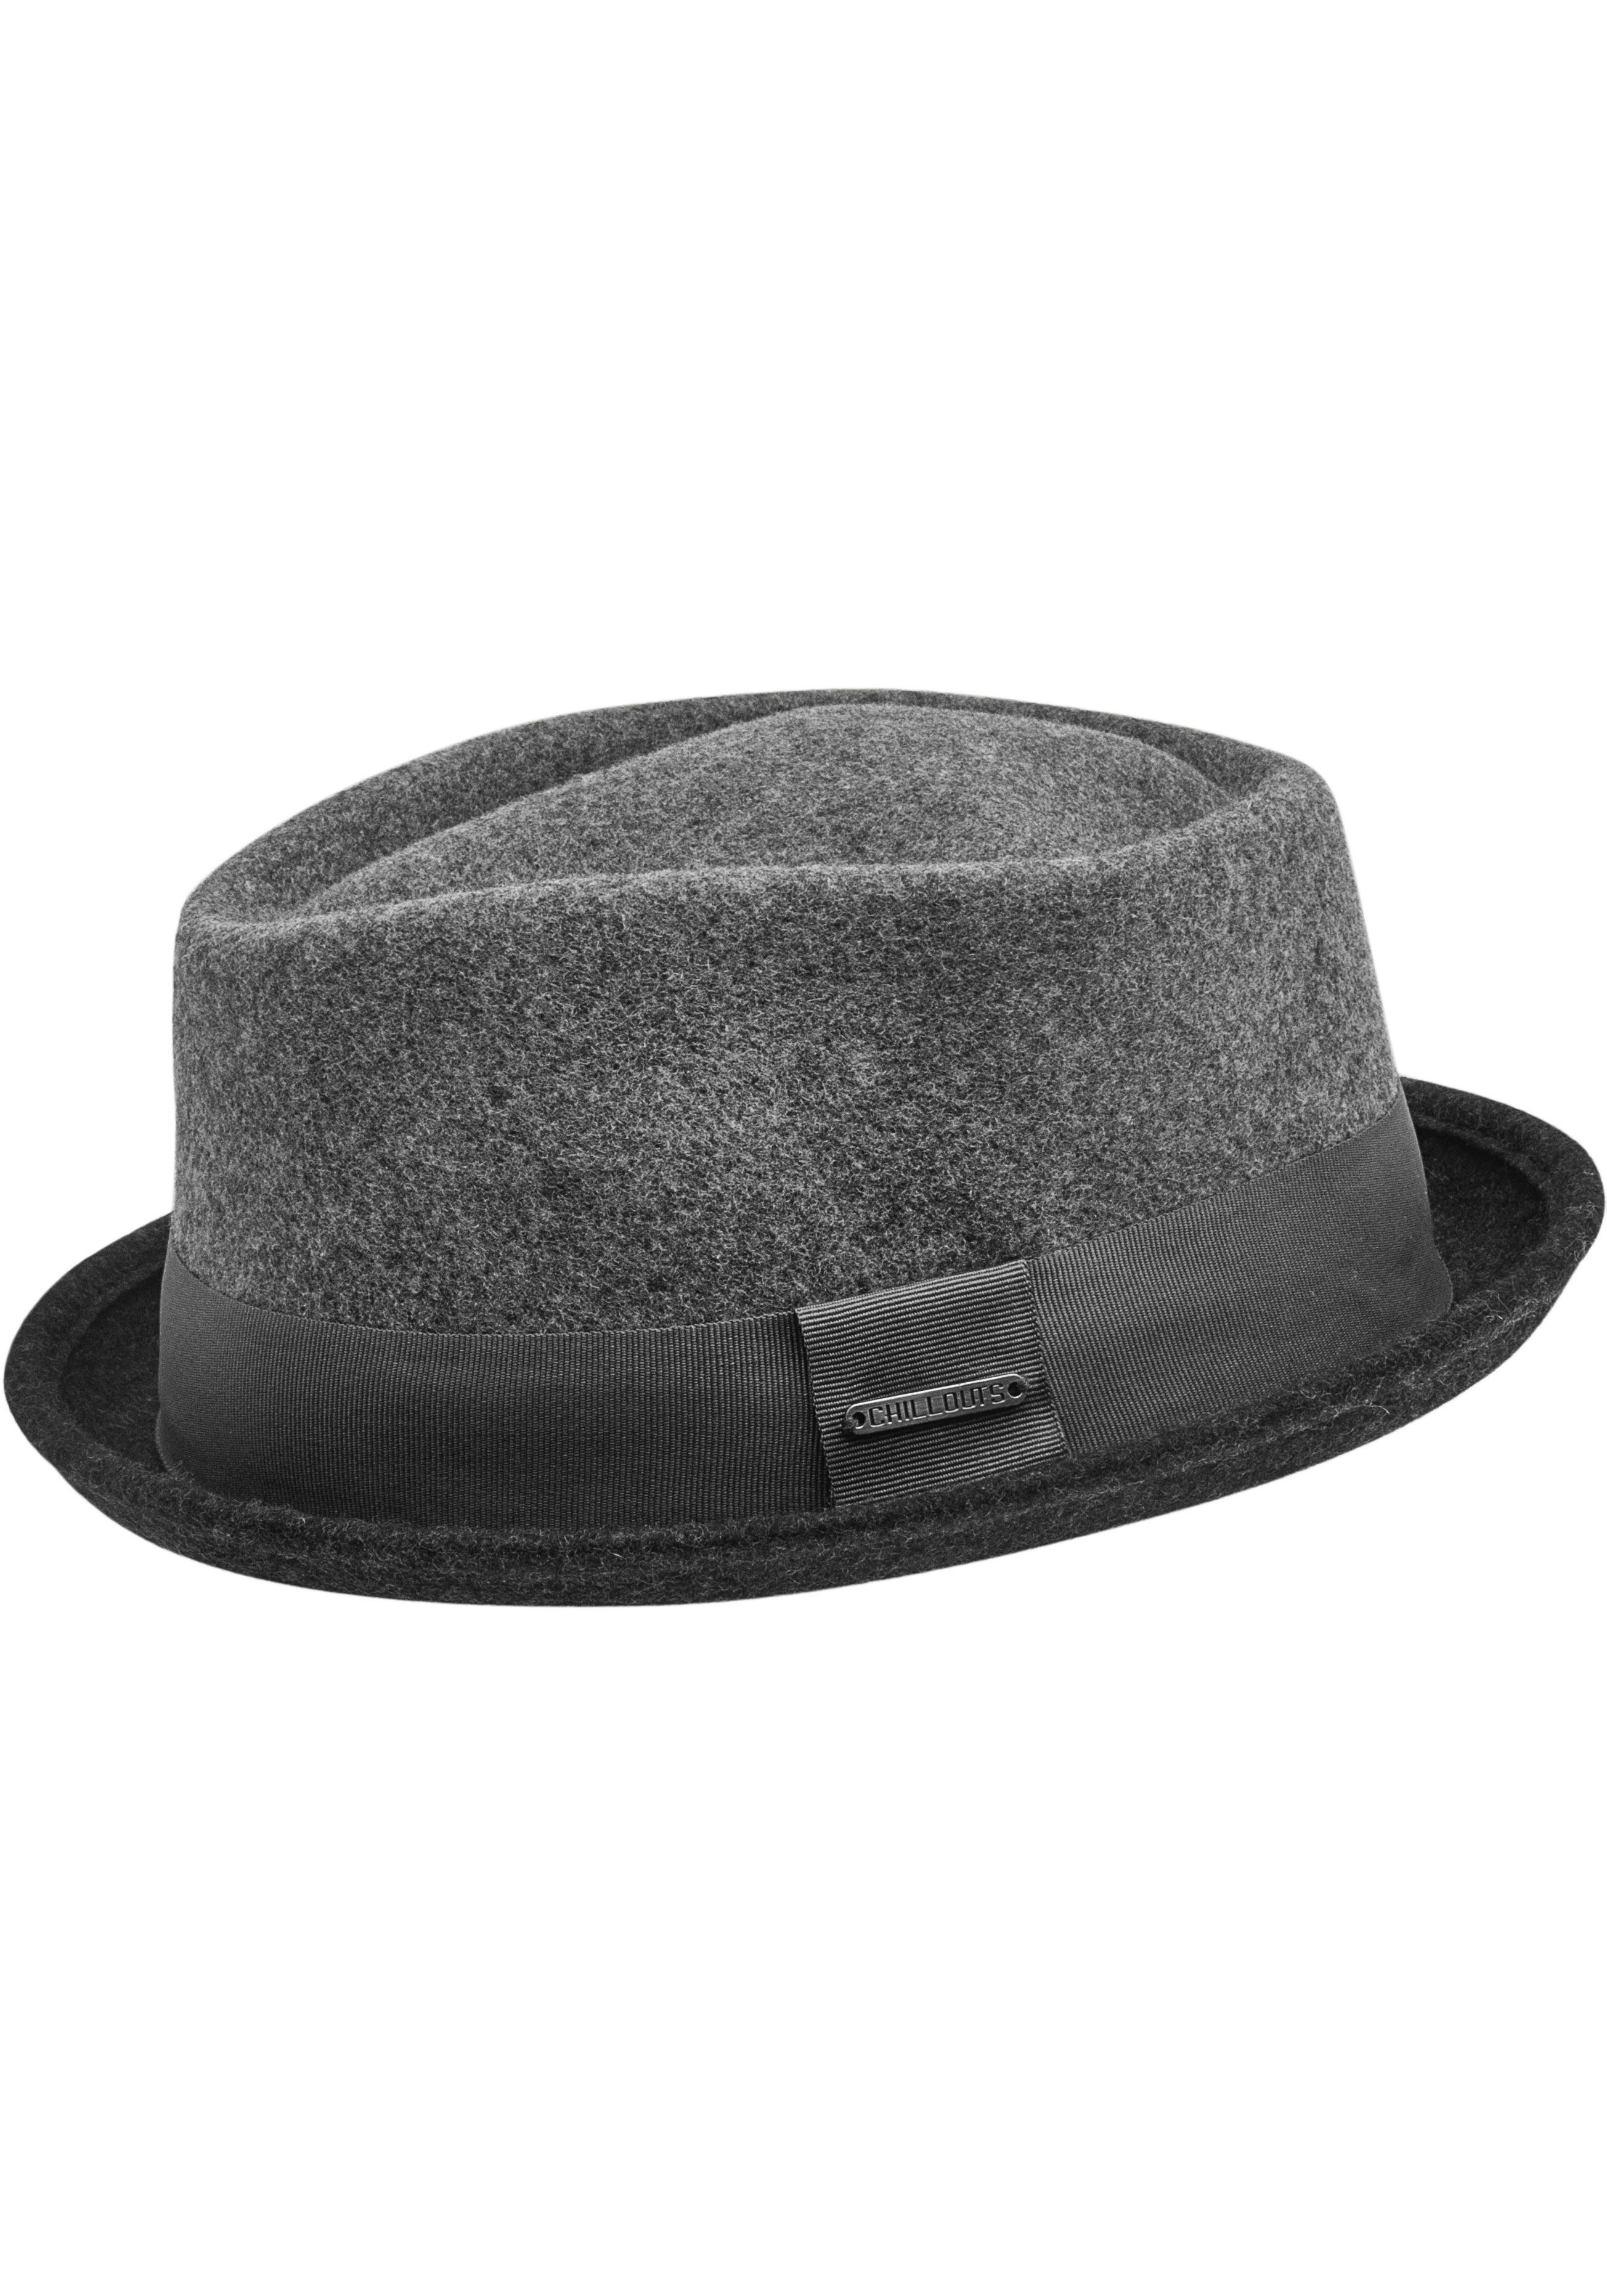 Hat chillouts grey Filzhut Neal